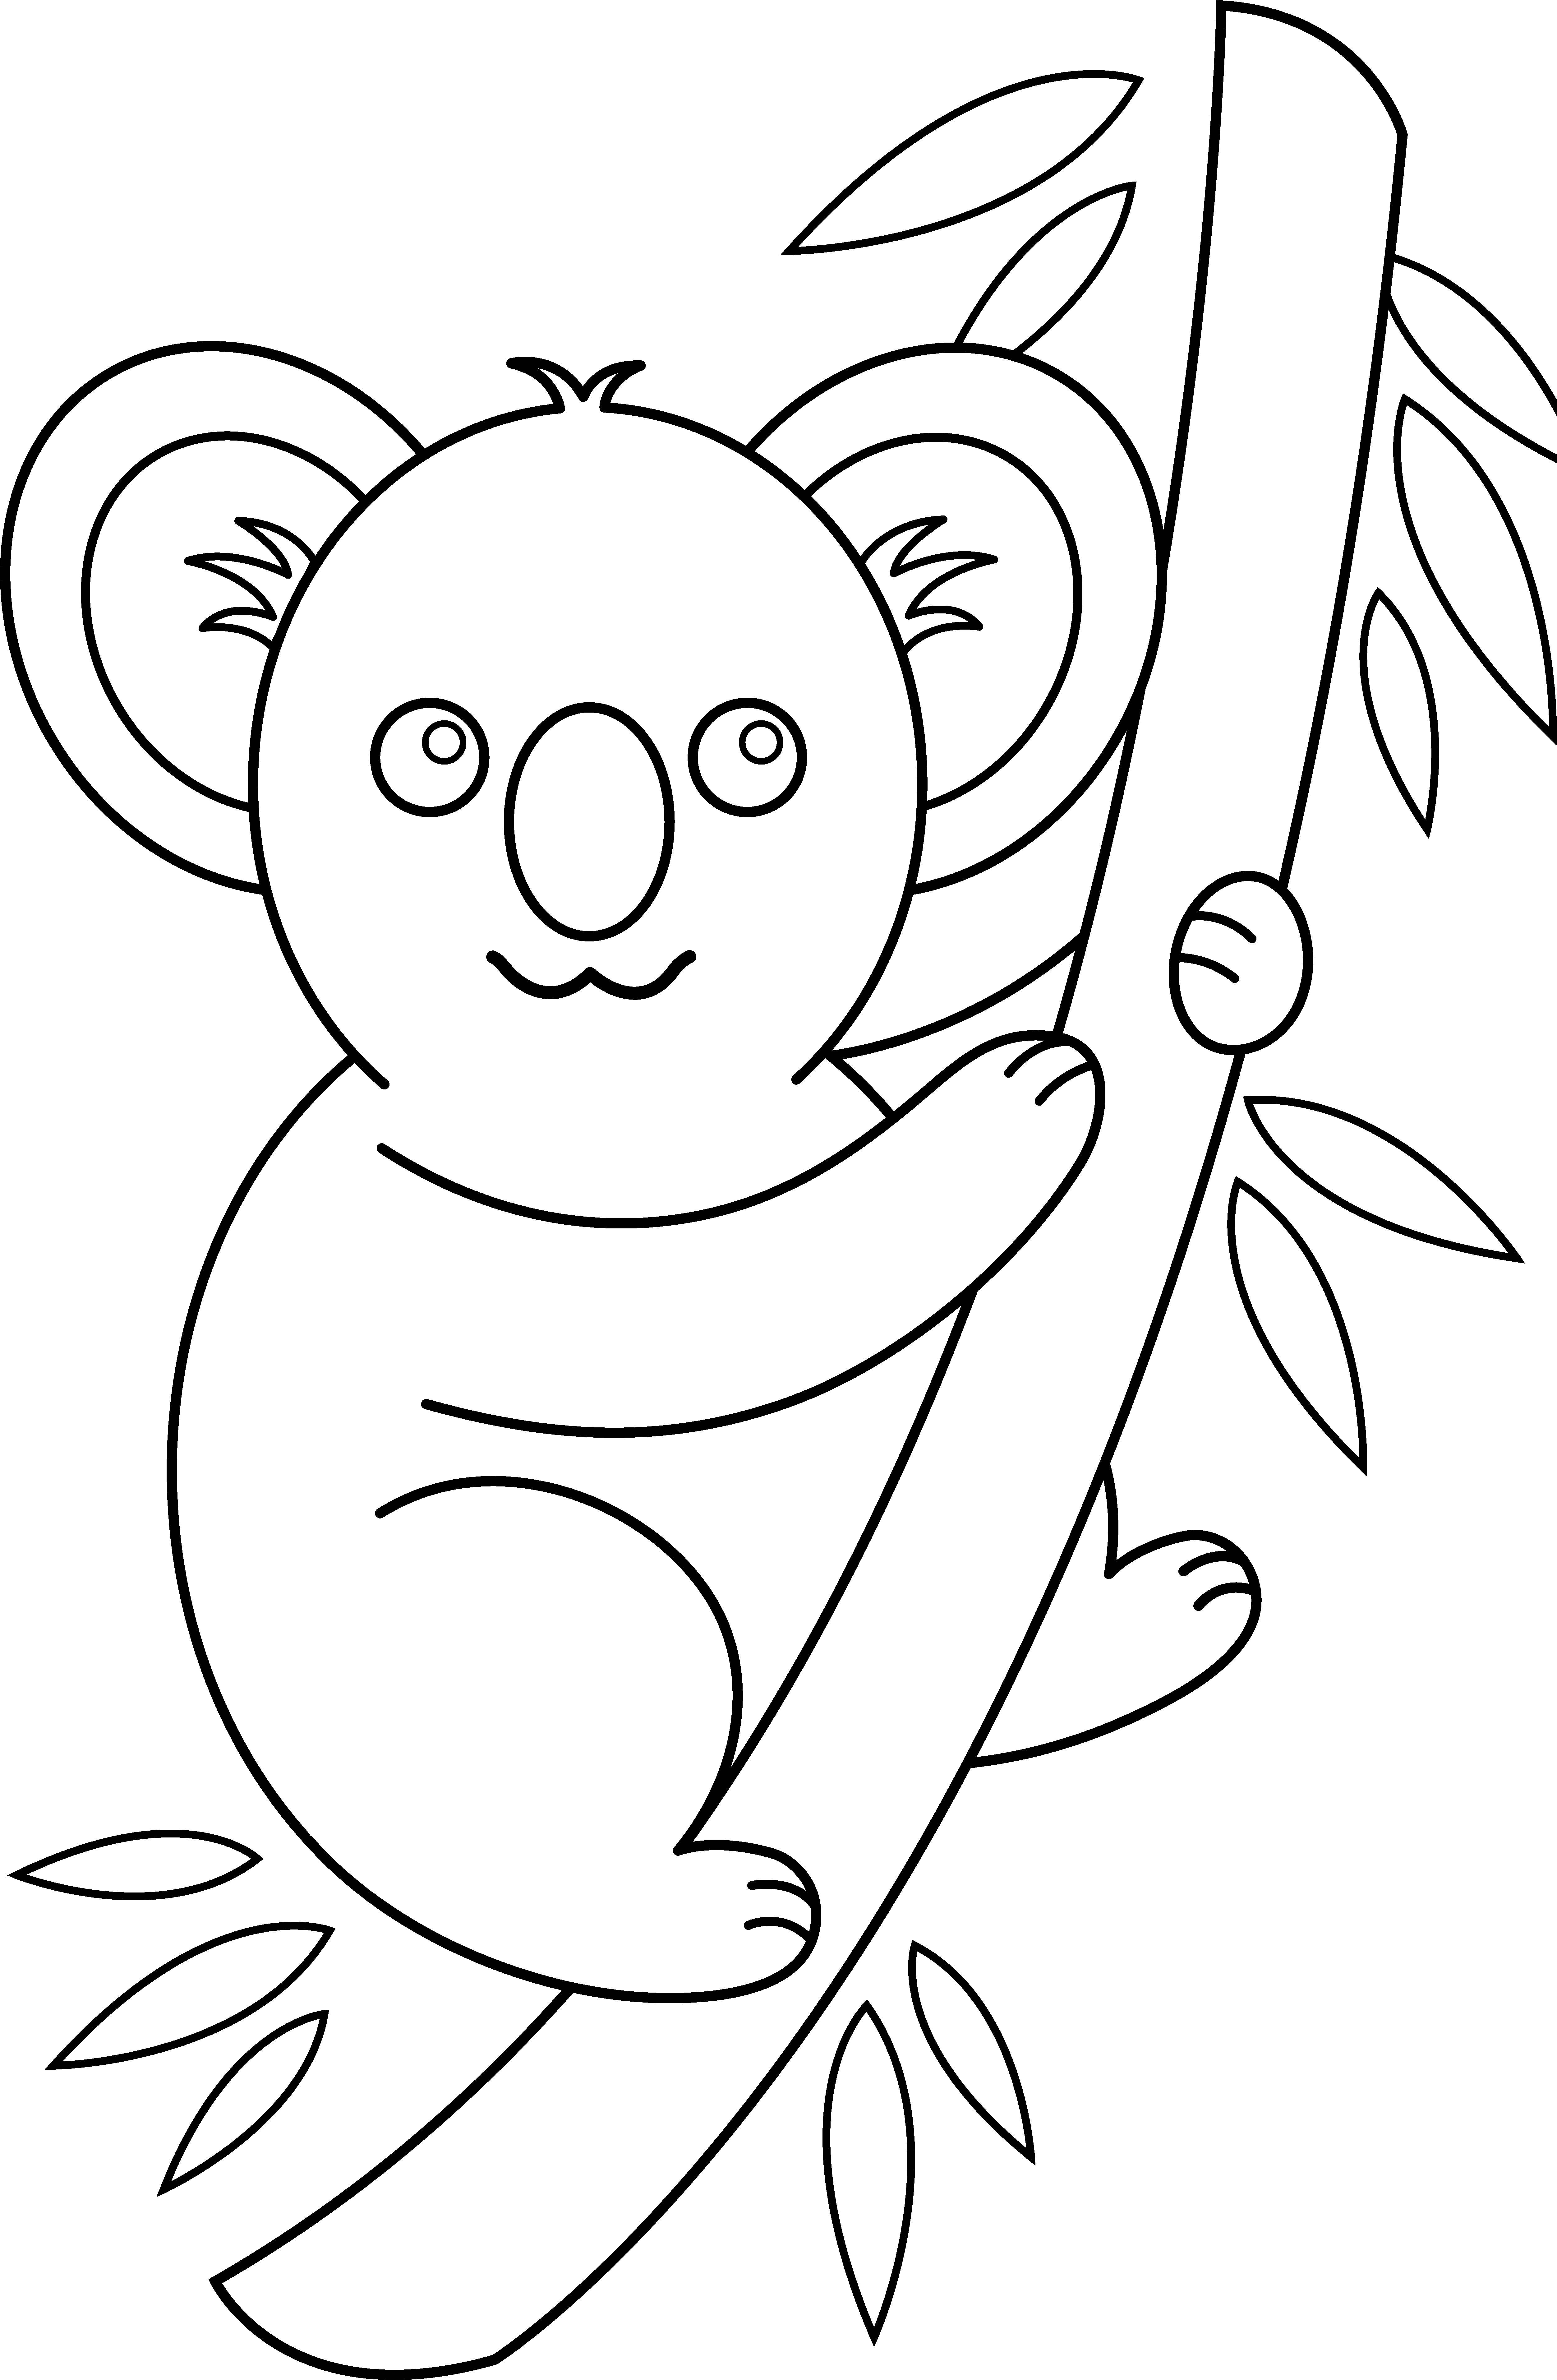 Koala Outline - Cliparts.co